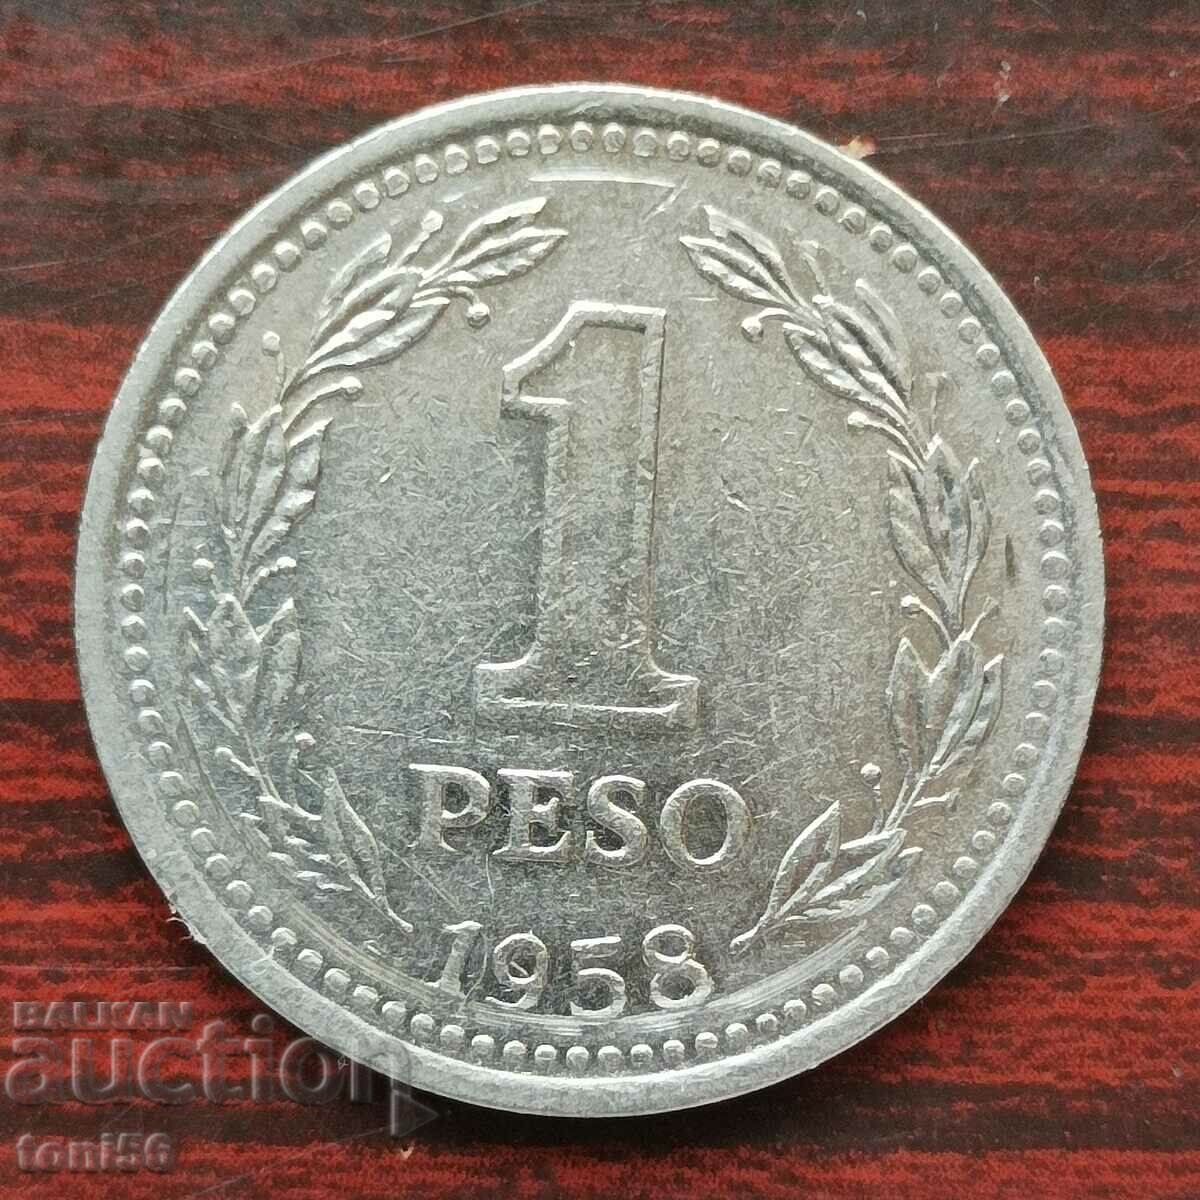 Αργεντινή 1 πέσο 1958